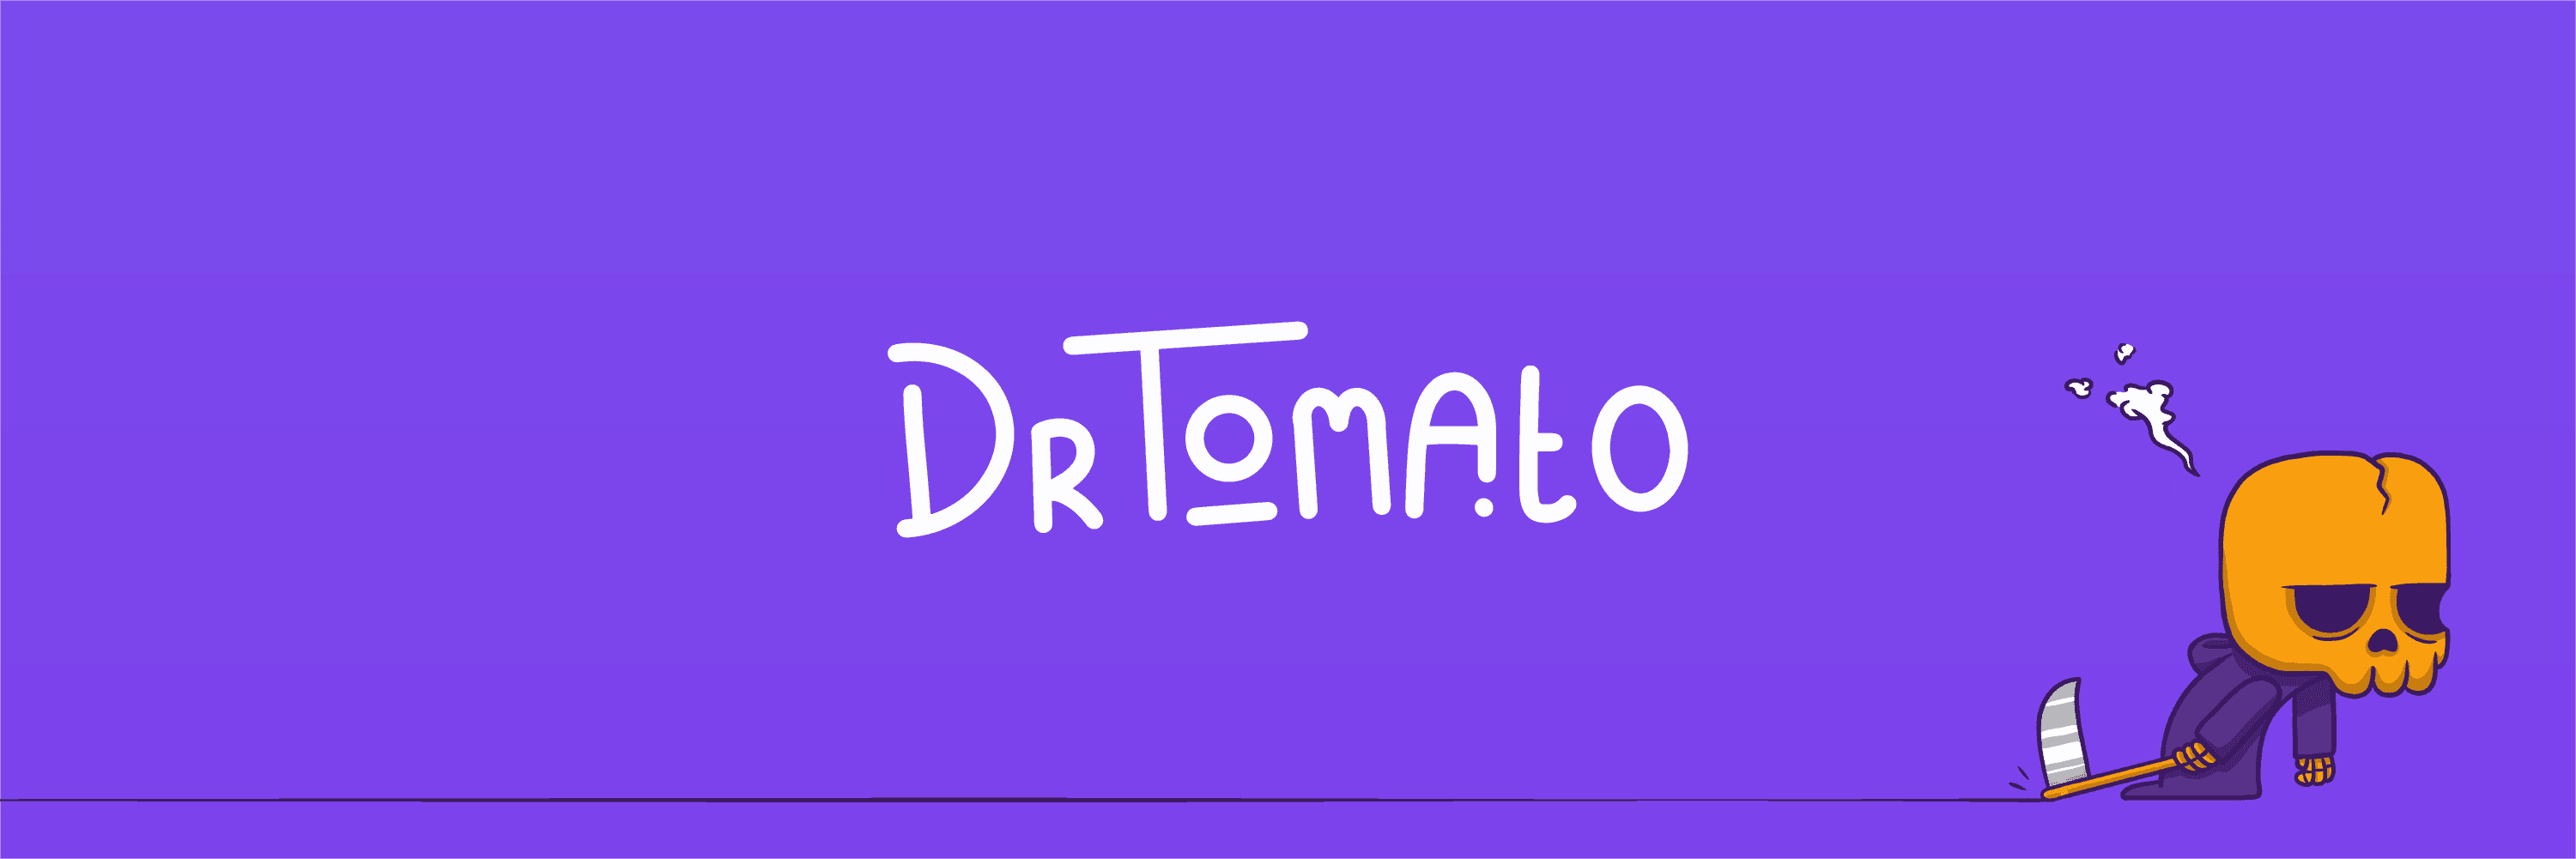 DrTomato_Vault bannière